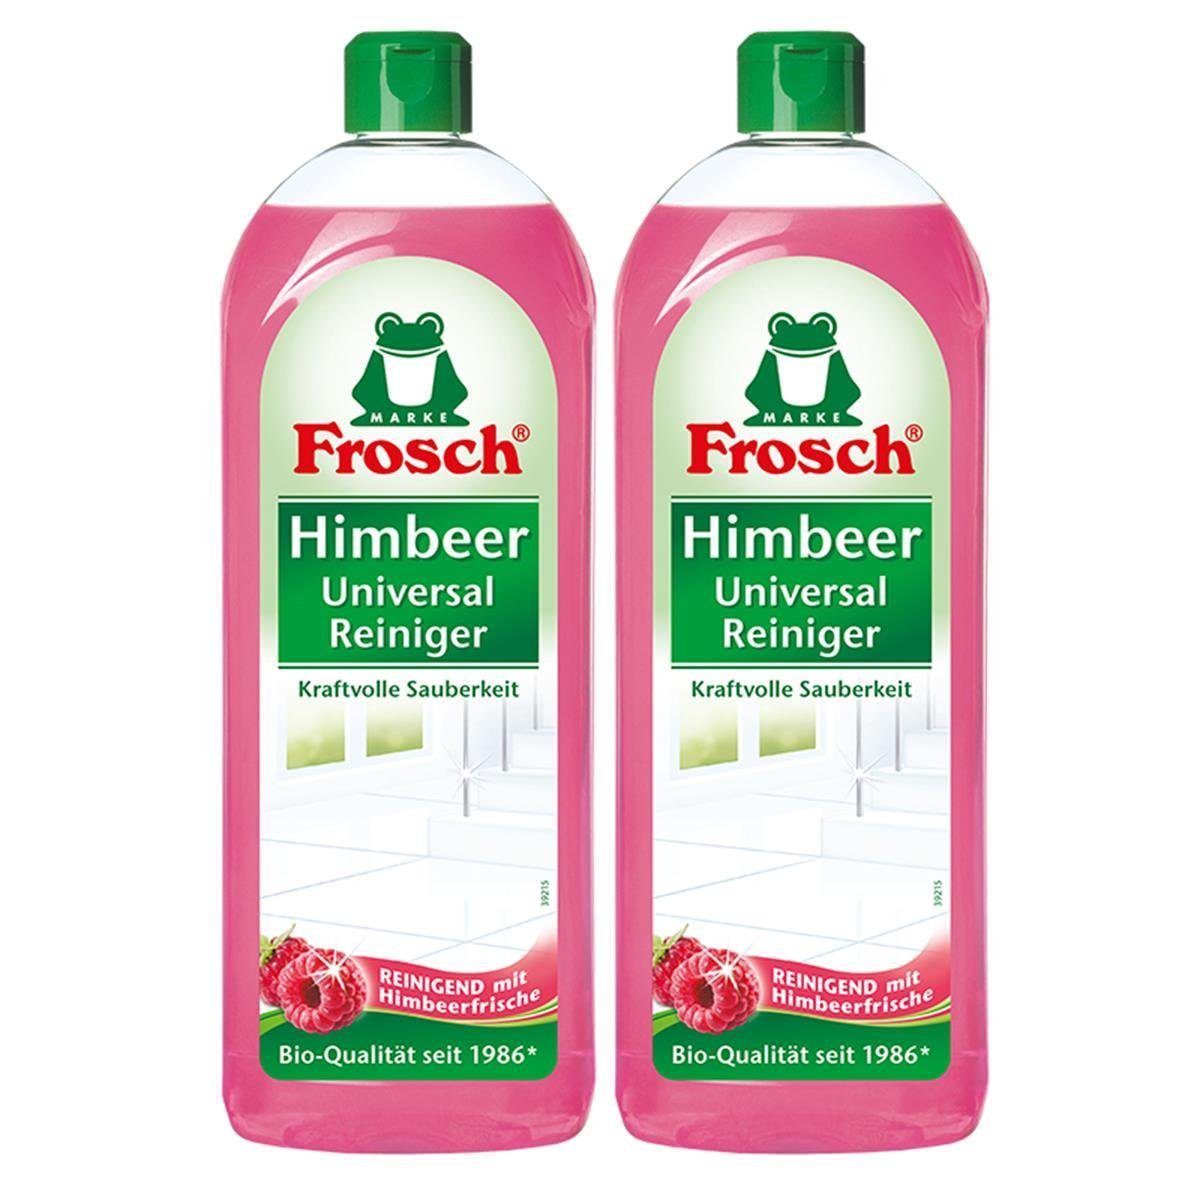 FROSCH Frosch Himbeer Universal-Reiniger 750 ml – Kraftvolle Sauberkeit (2er Allzweckreiniger